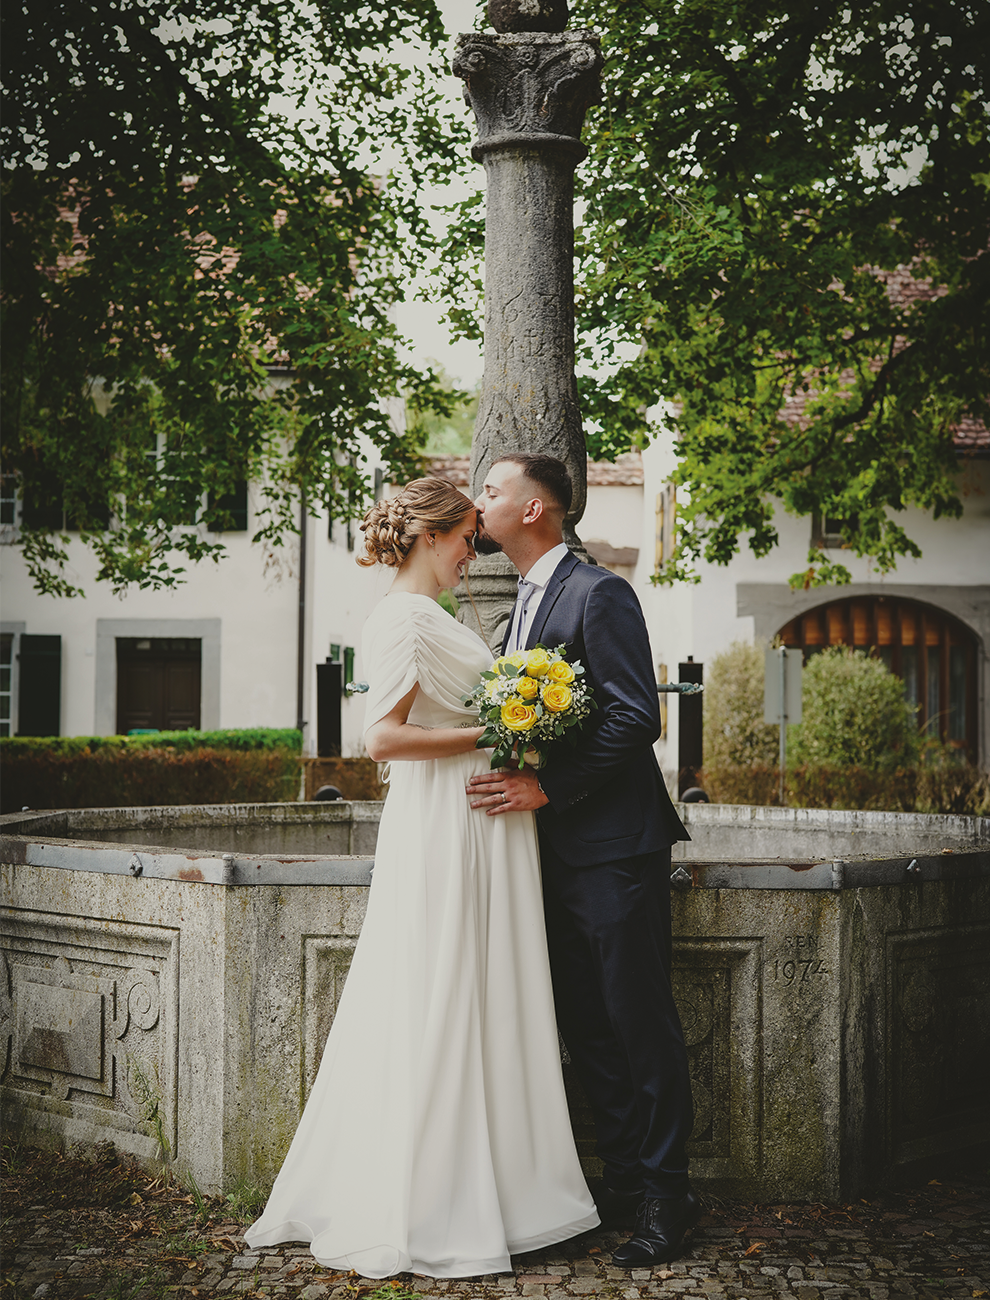 Brautpaar küsst sich liebevoll an historischem Brunnen.